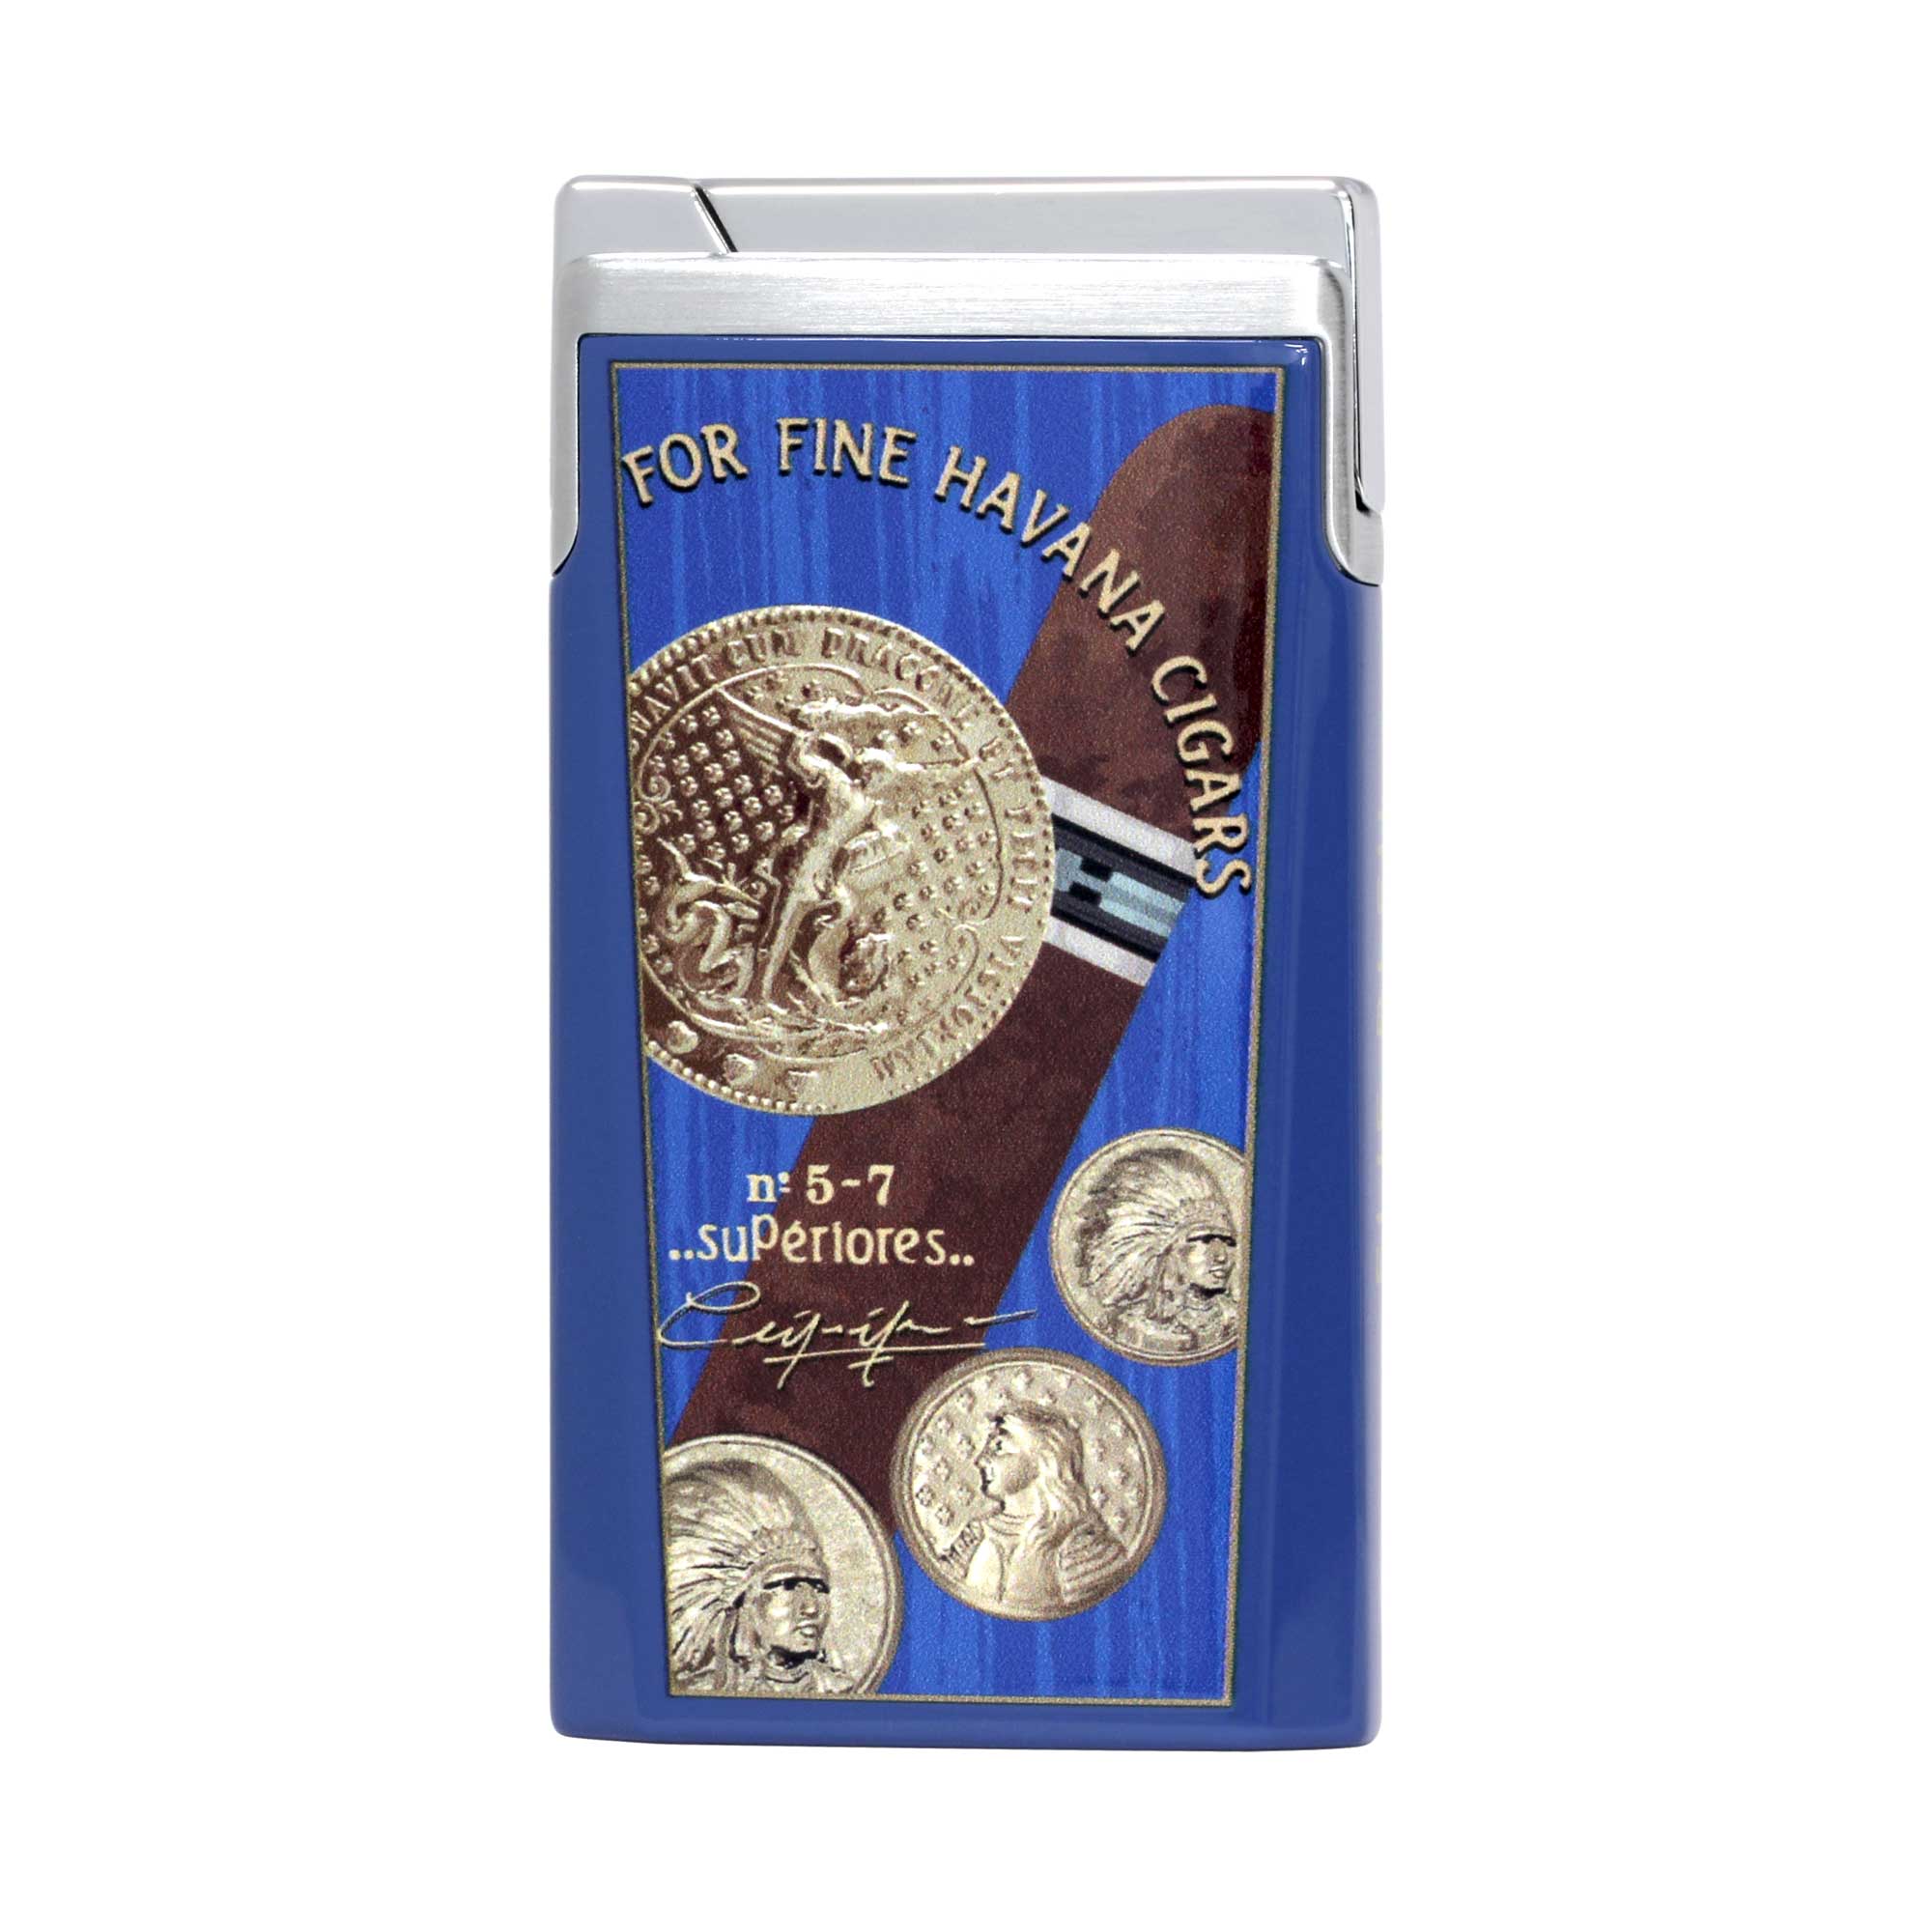 "J15" - Pocket lighter in Lacquer Medal